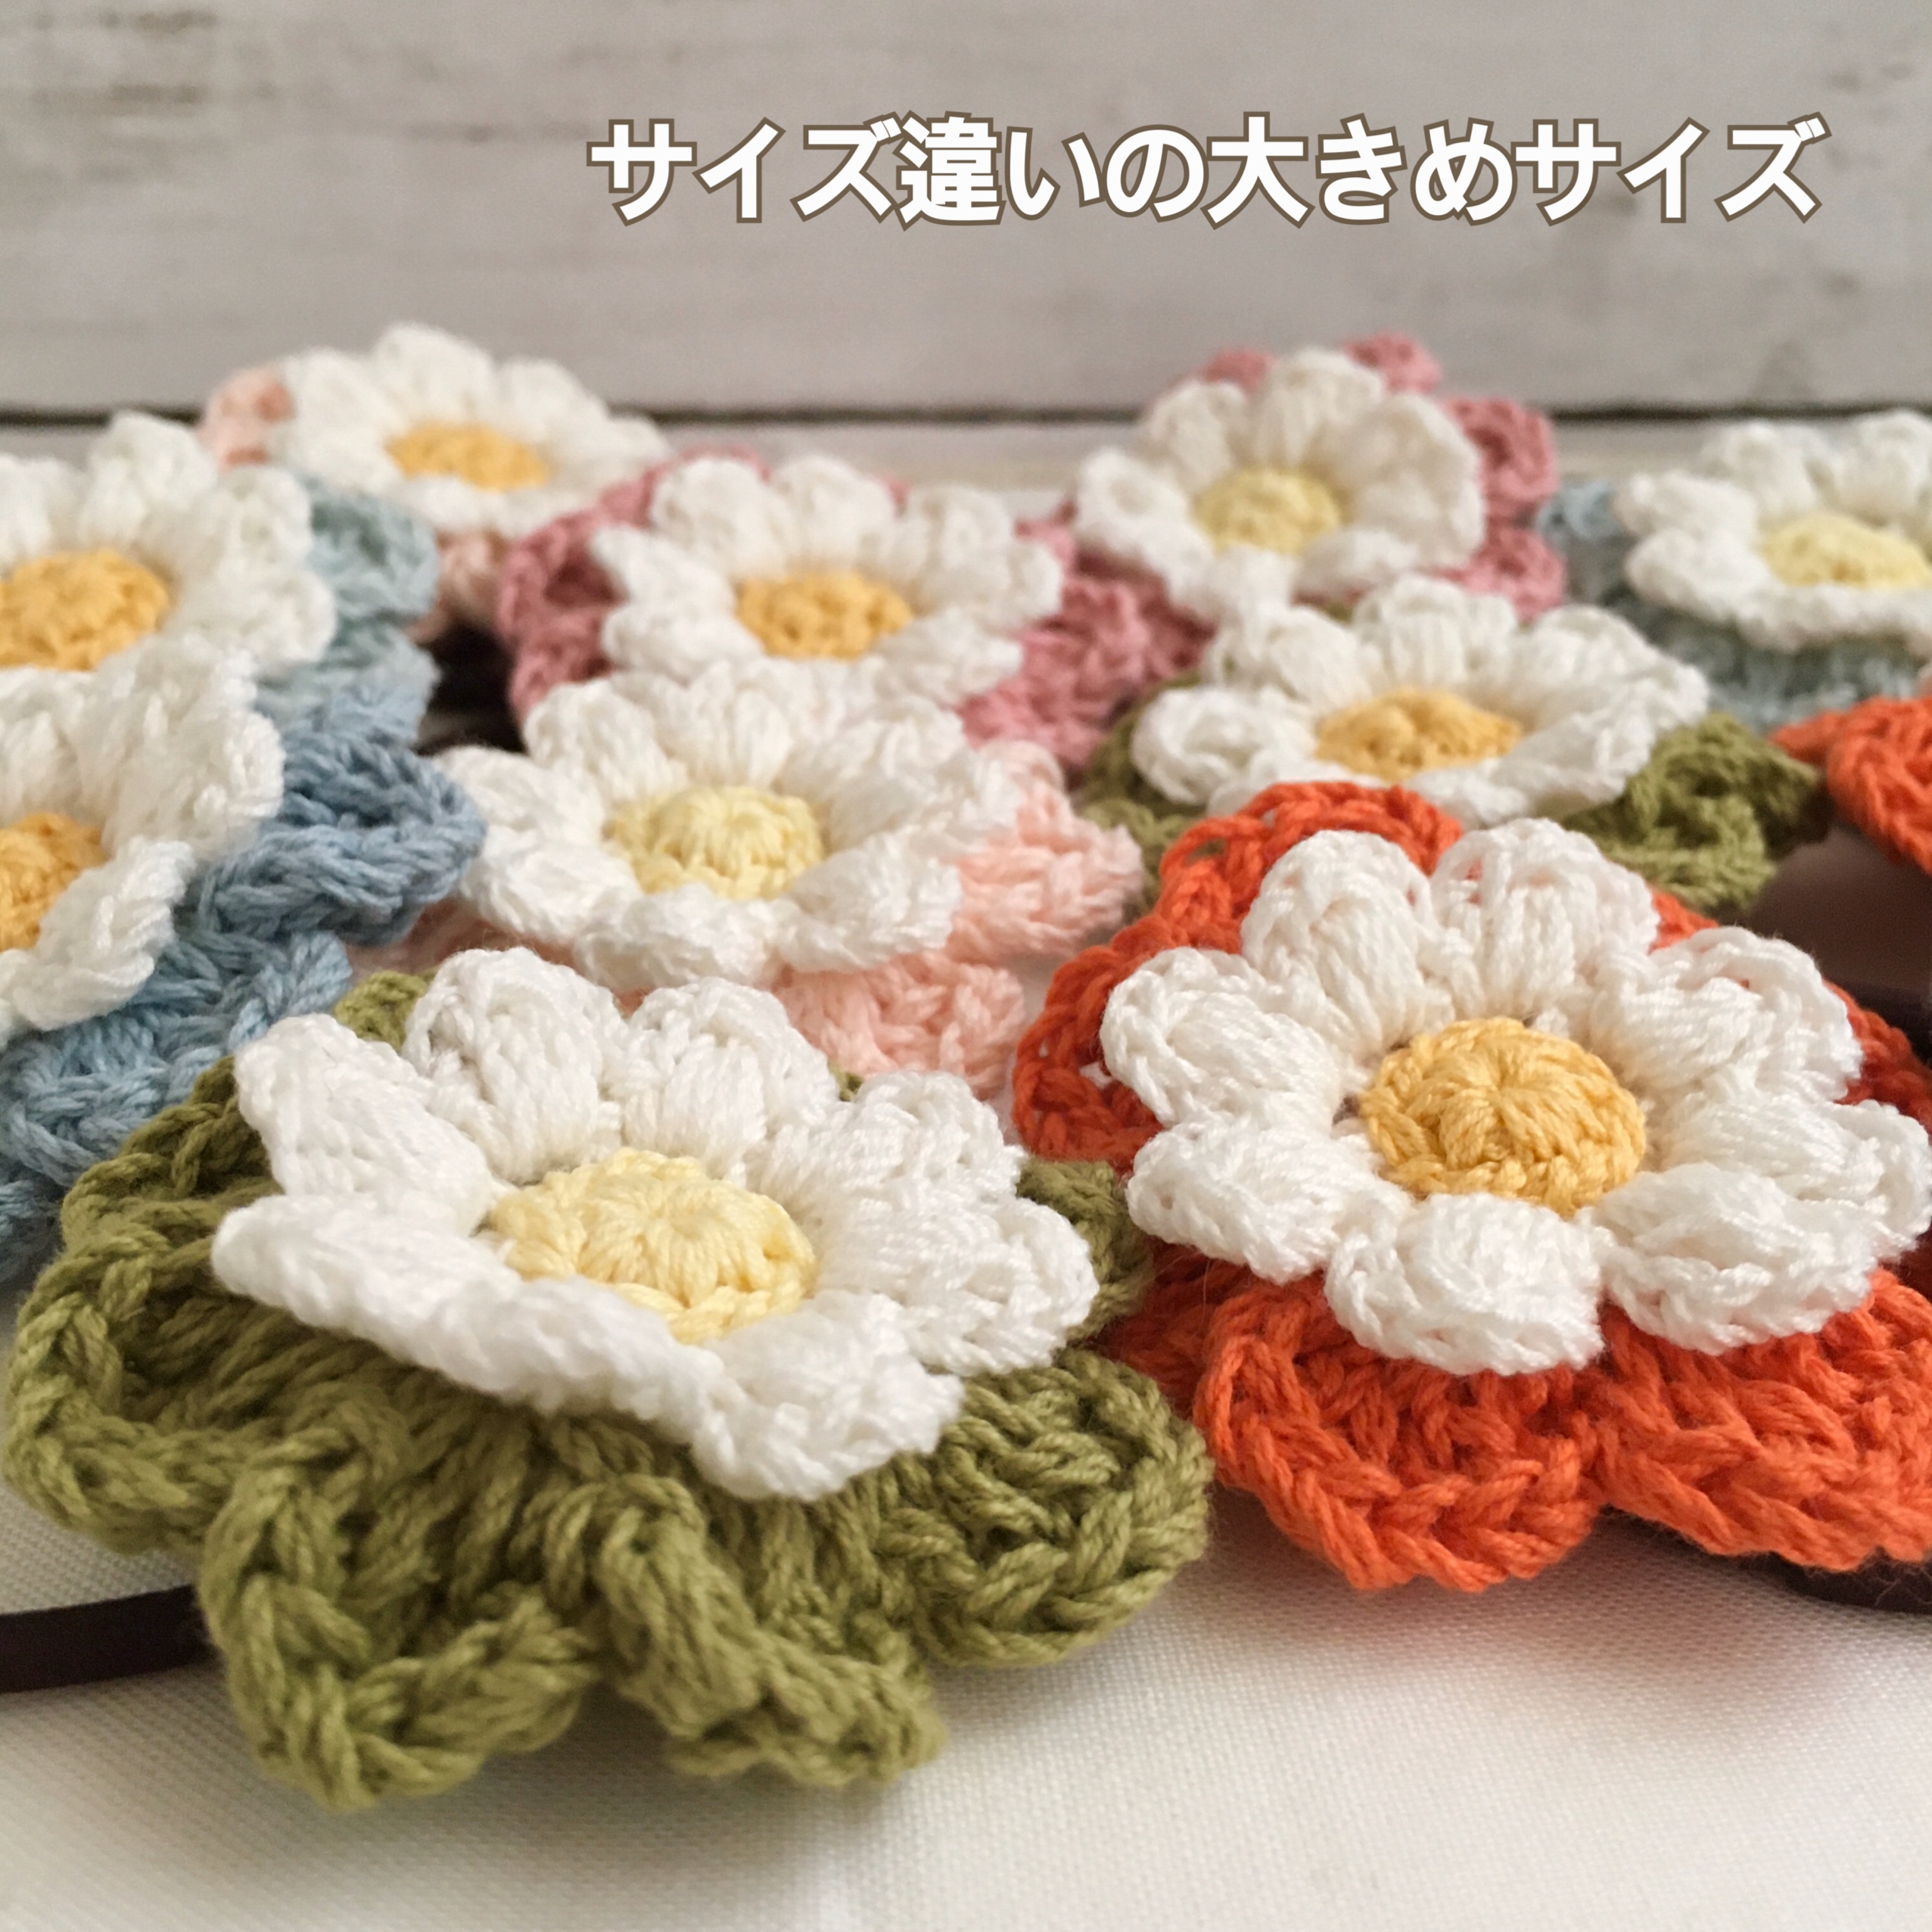 大きめサイズ 選べる コットン糸で編むナチュラル雰囲気のお花ヘアゴム Iichi ハンドメイド クラフト作品 手仕事品の通販